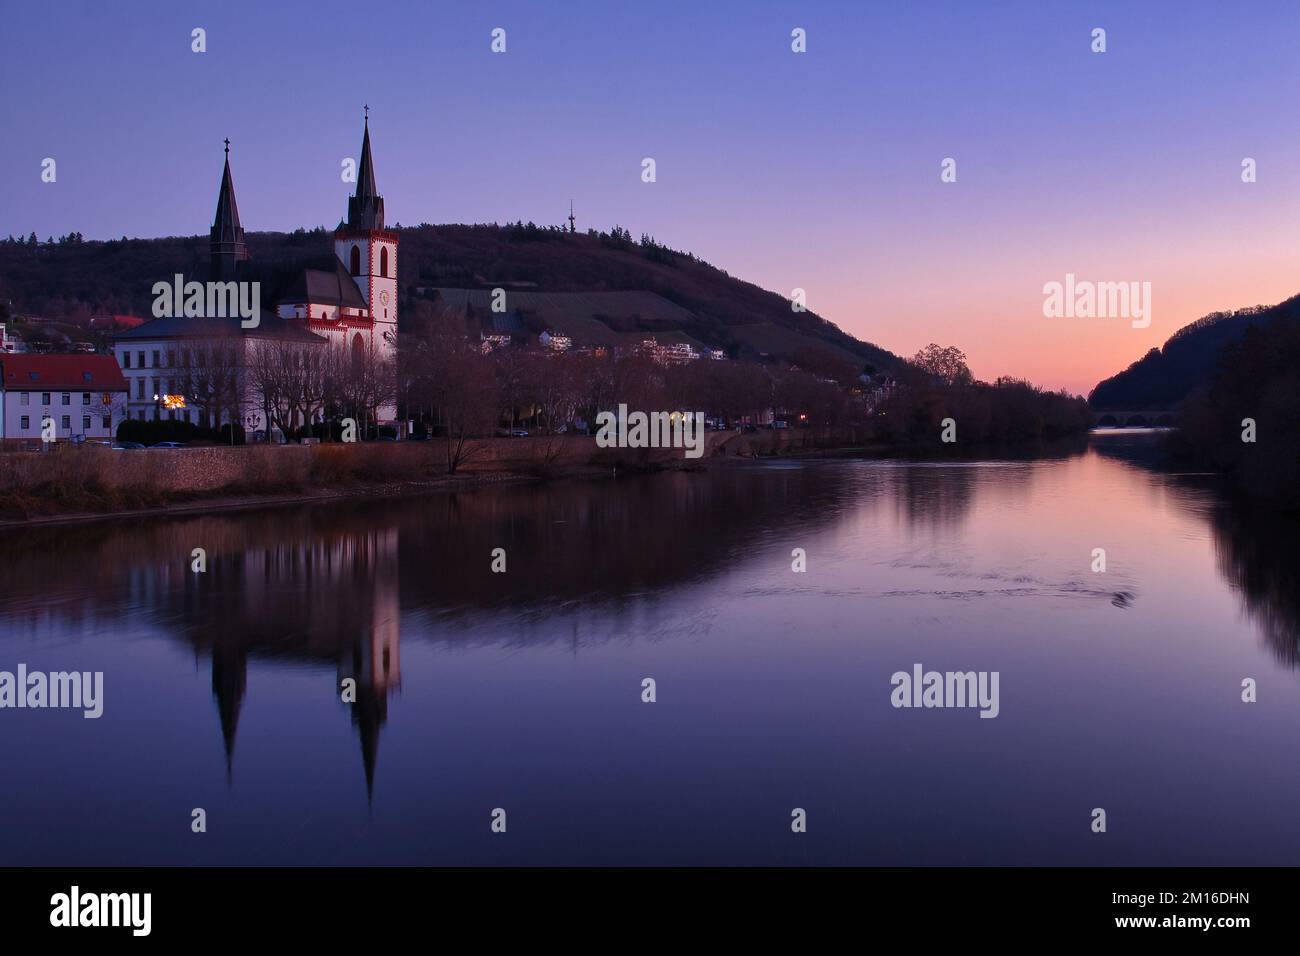 Bingen am Rhein, Germania - 10 gennaio 2021: Basilica di San Martin e altri edifici e le loro riflessioni nel fiume Reno in un inverno colorato Foto Stock